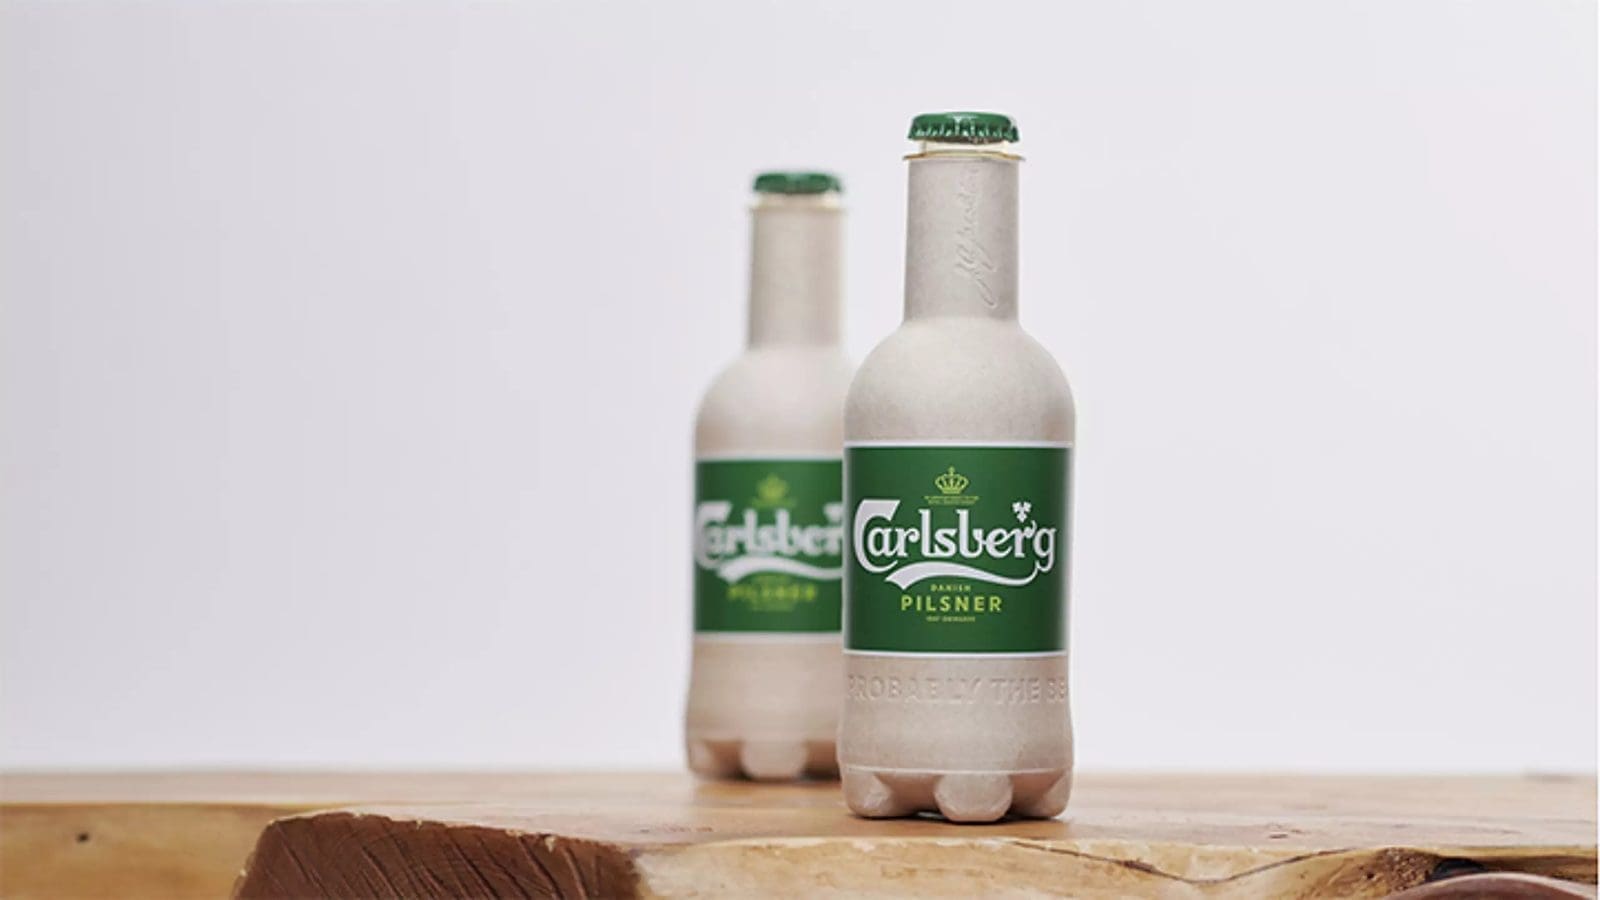 Carlsberg pilots 8,000 bio-based fully recyclable beer bottles across Western Europe